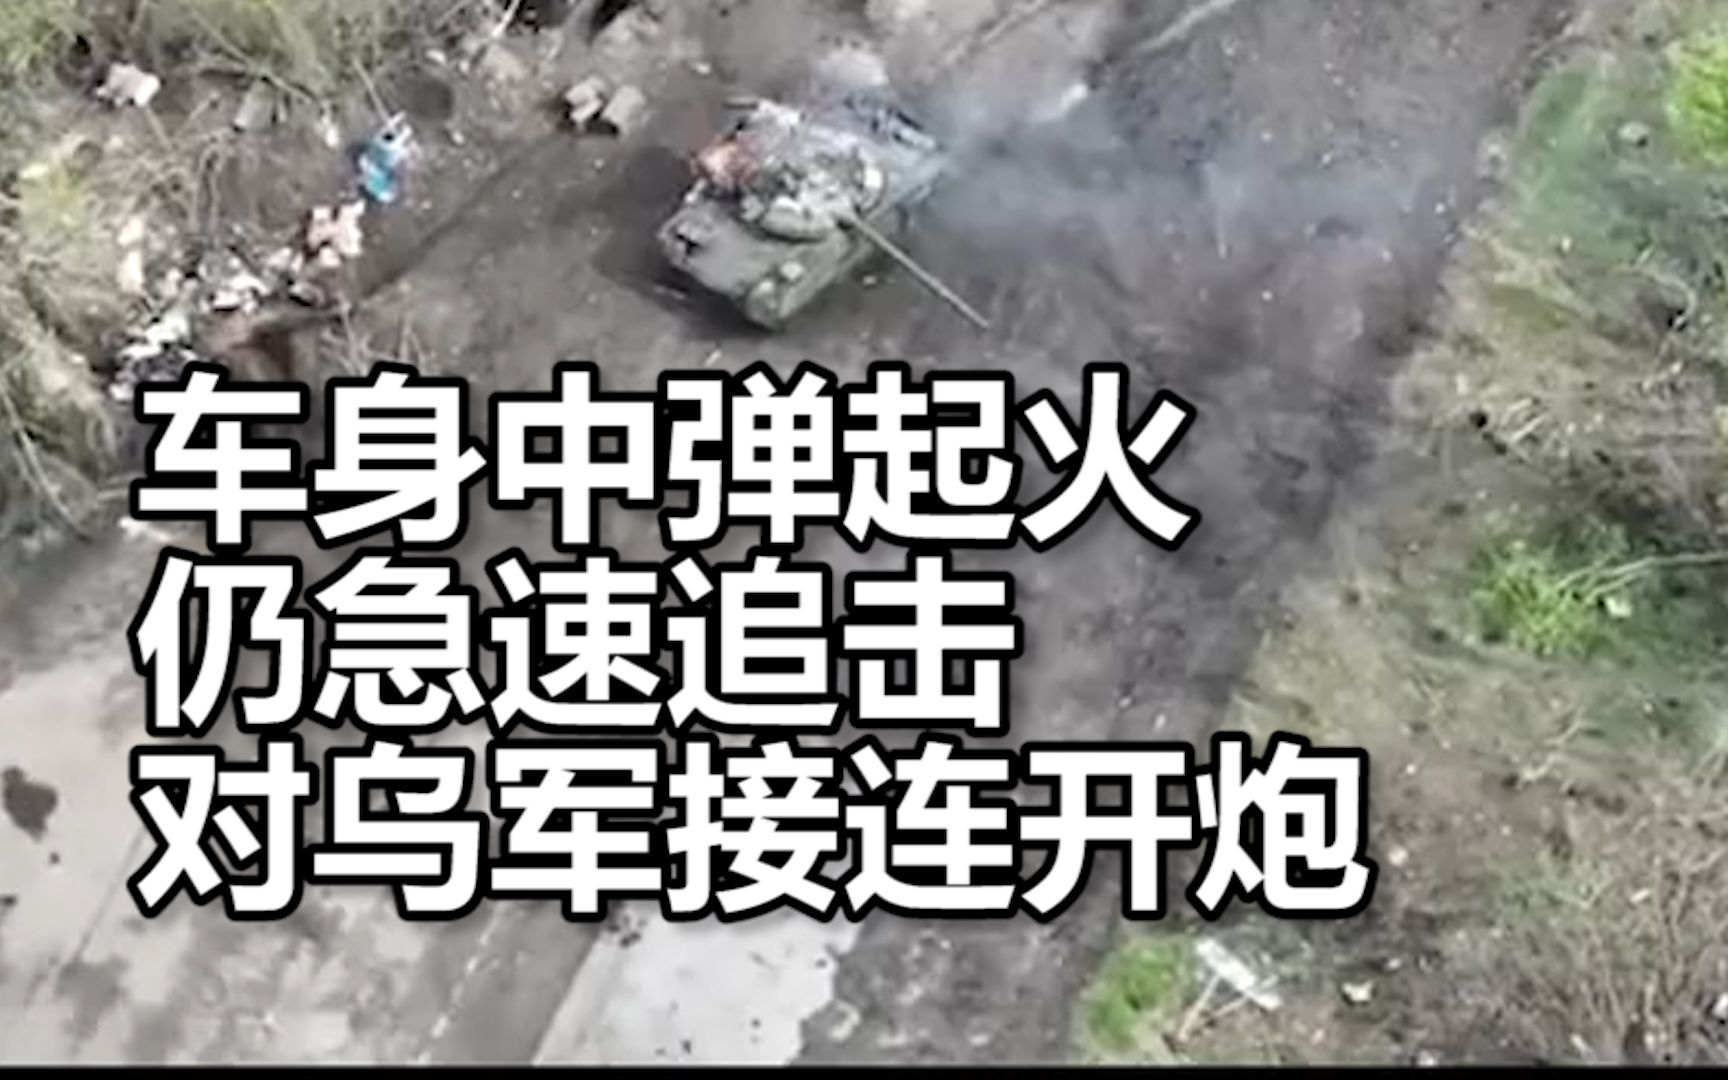 战斗画面：无人机记录俄军T-80B坦克作战全过程，车身中弹起火仍急速追击对乌军接连开炮